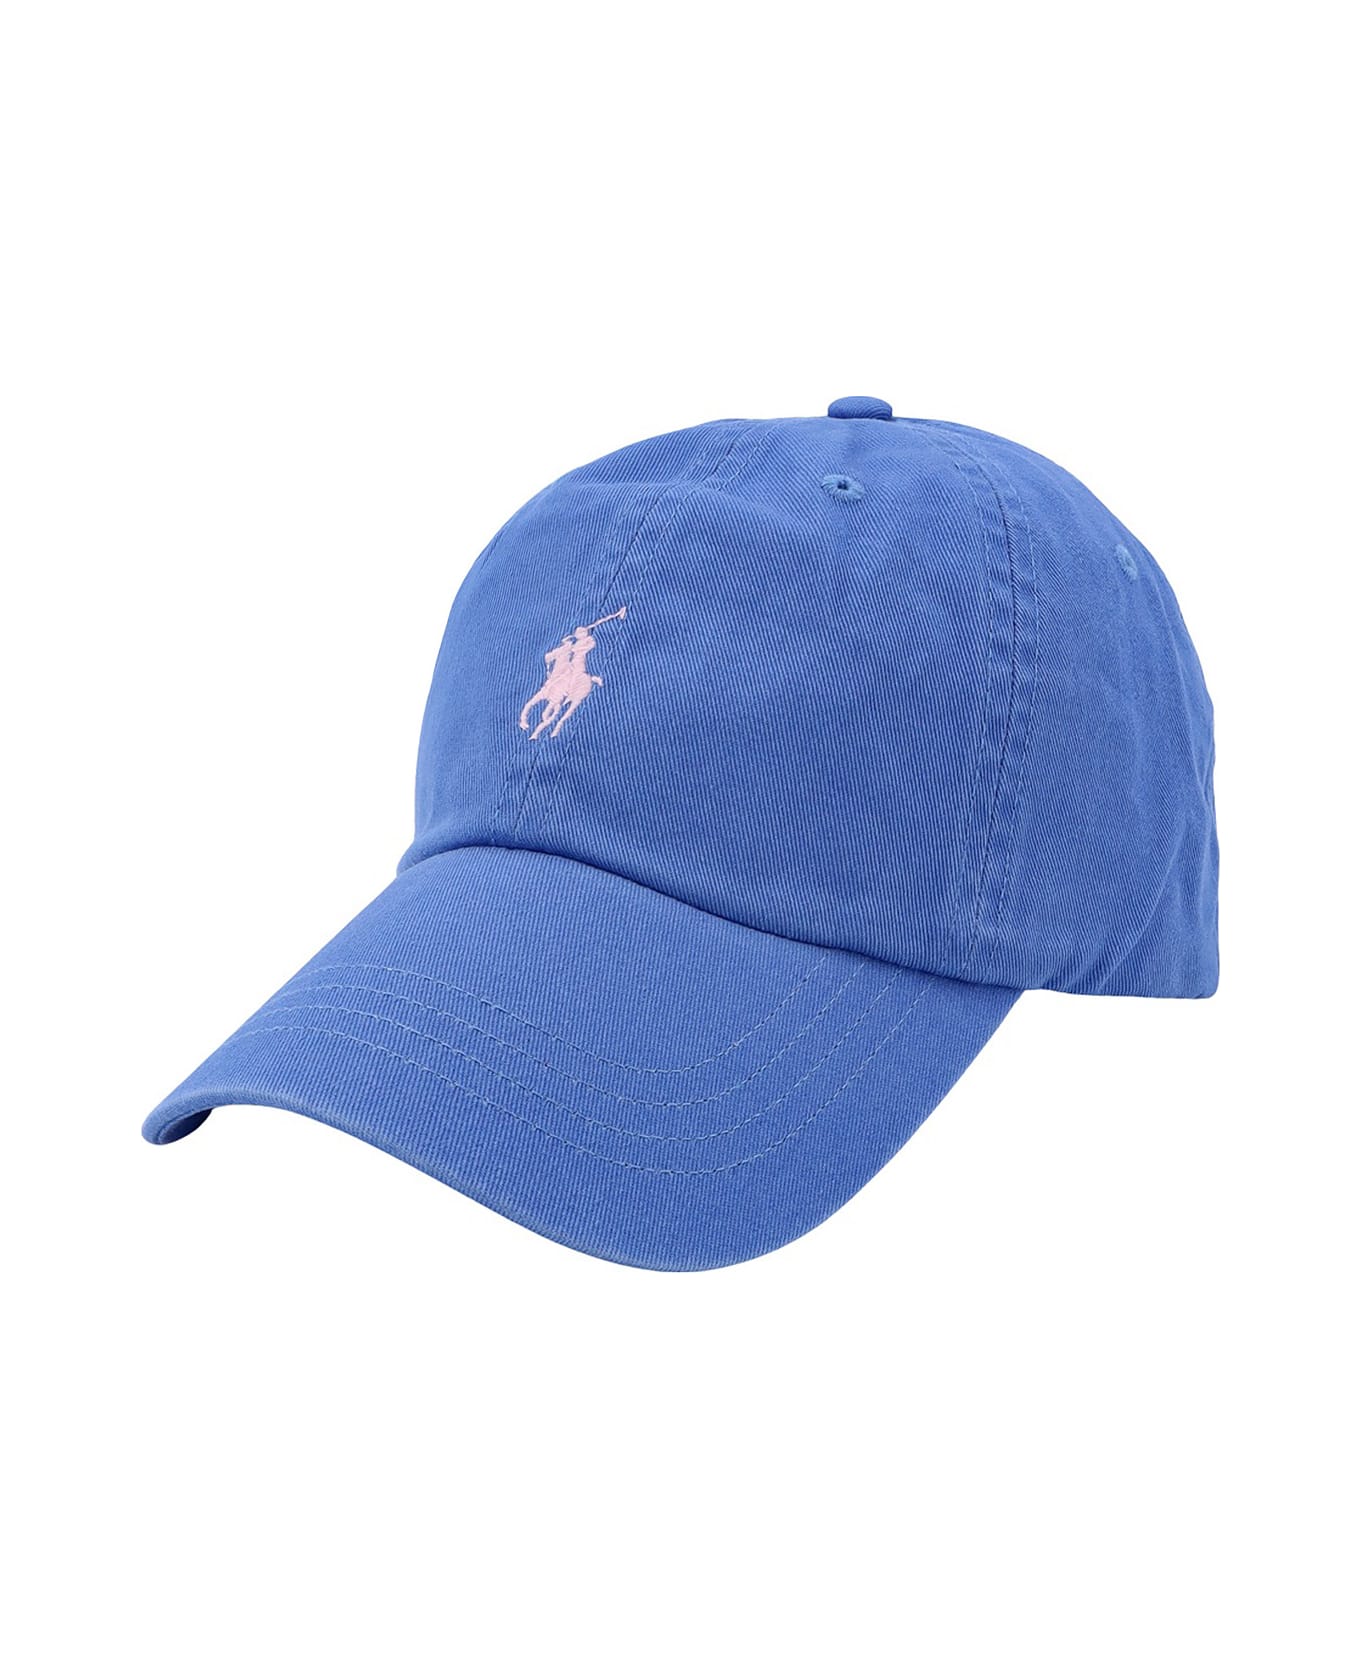 Ralph Lauren Hat - New England Blue